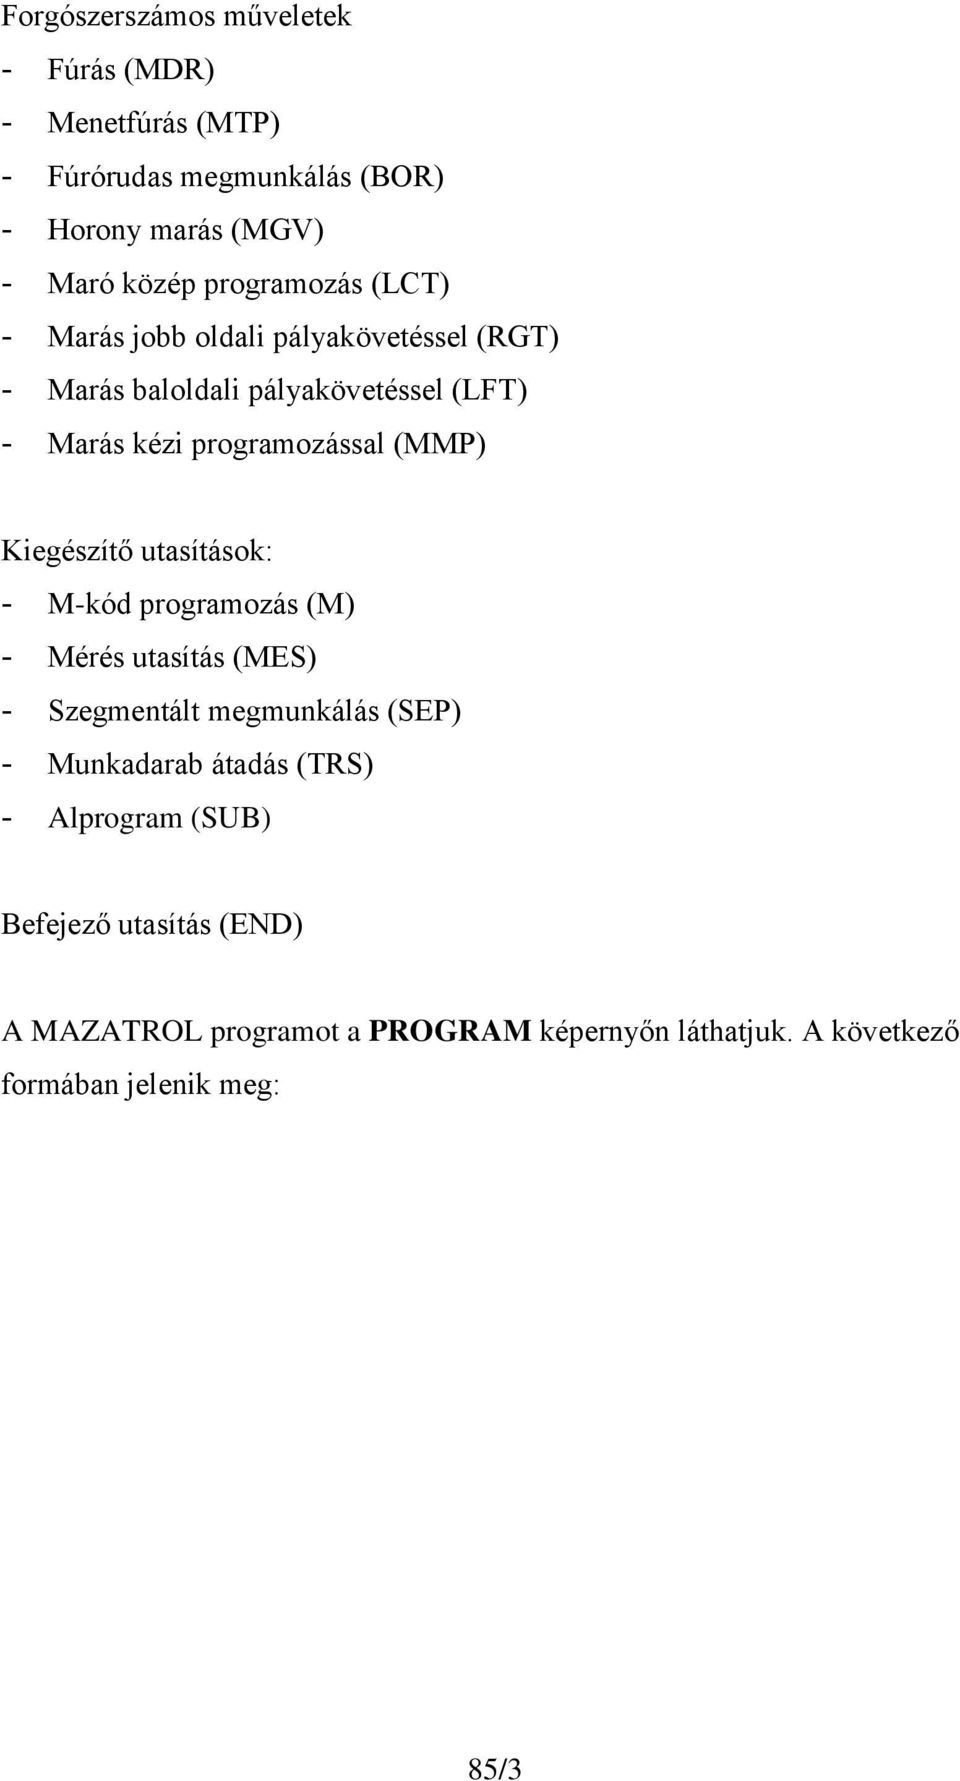 (MMP) Kiegészítő utasítások: - M-kód programozás (M) - Mérés utasítás (MES) - Szegmentált megmunkálás (SEP) - Munkadarab átadás